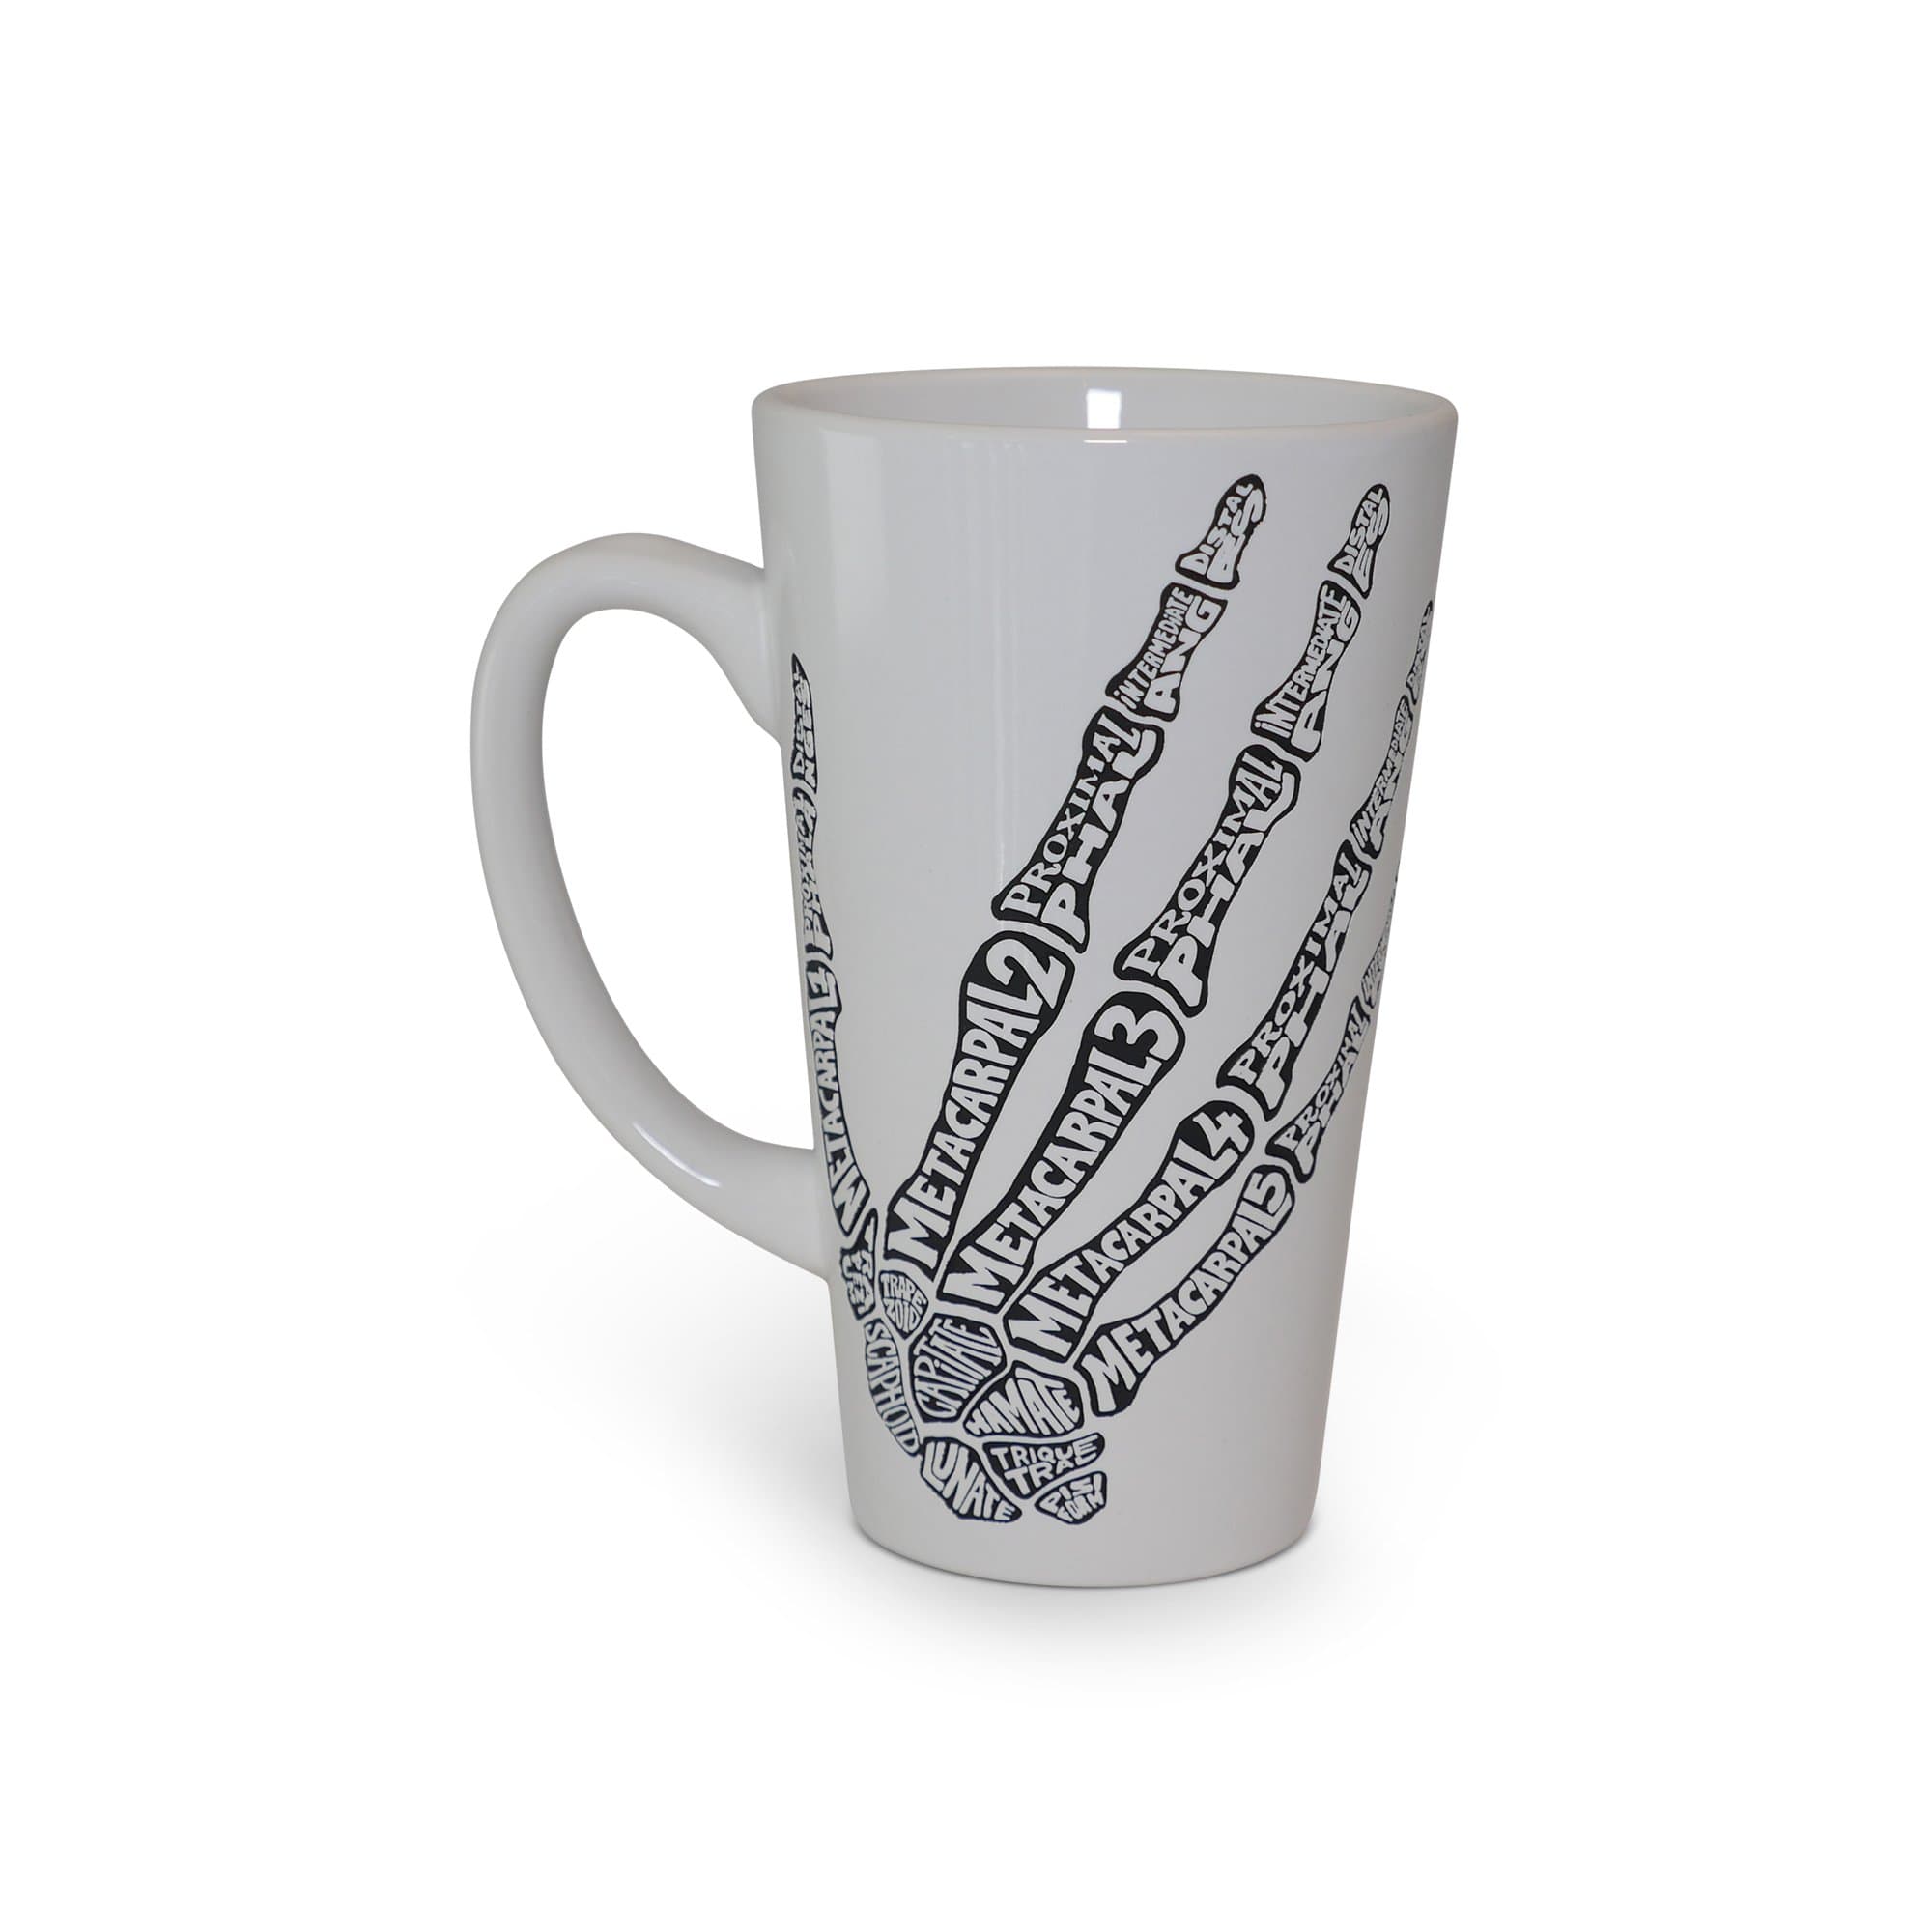 Hand Built Short Ceramic Mug – ESQUELETO